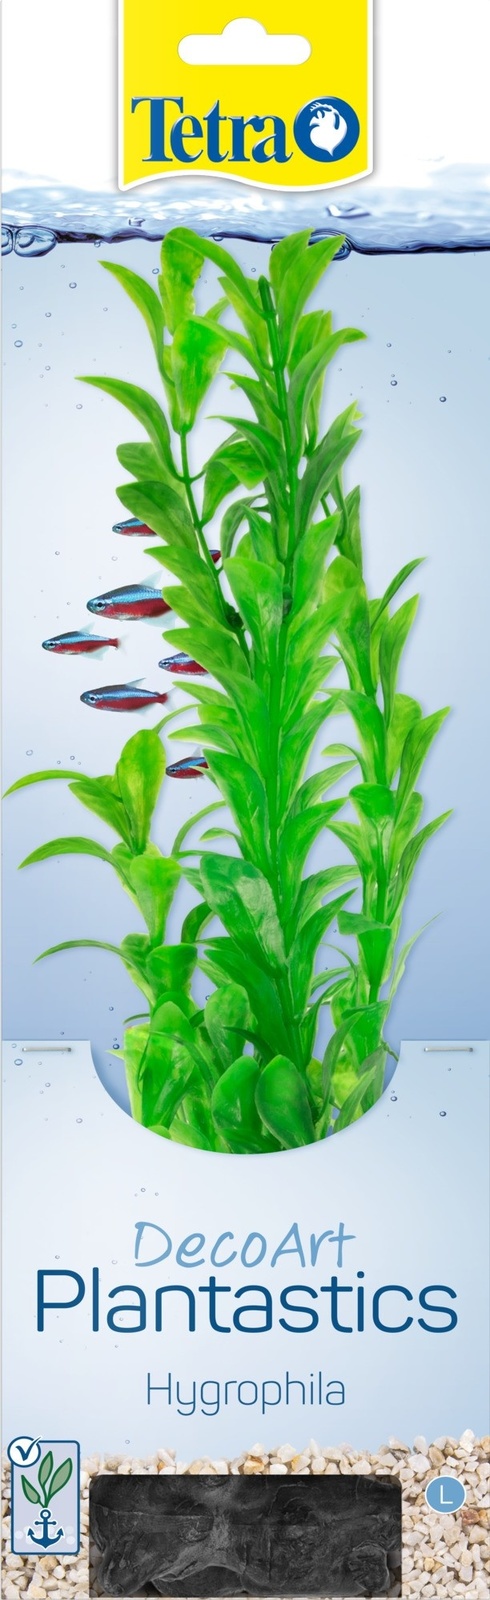 цена Tetra (оборудование) Tetra (оборудование) растение DecoArt Plantastics Hygrophila 30 см (115 г)